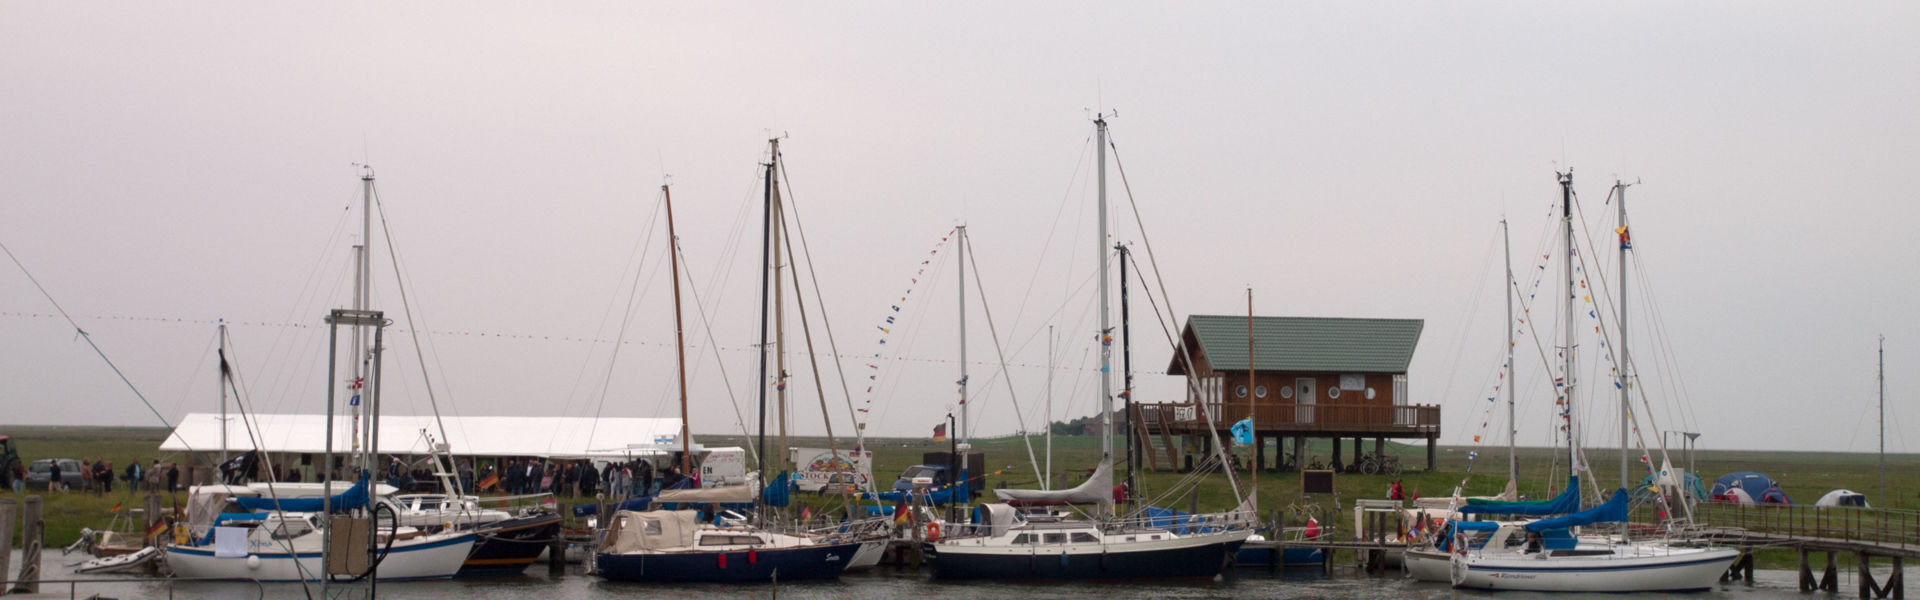 Schleusenfest auf Hooge, Segelboote liegen im Hafen, dahinter ein Festzelt